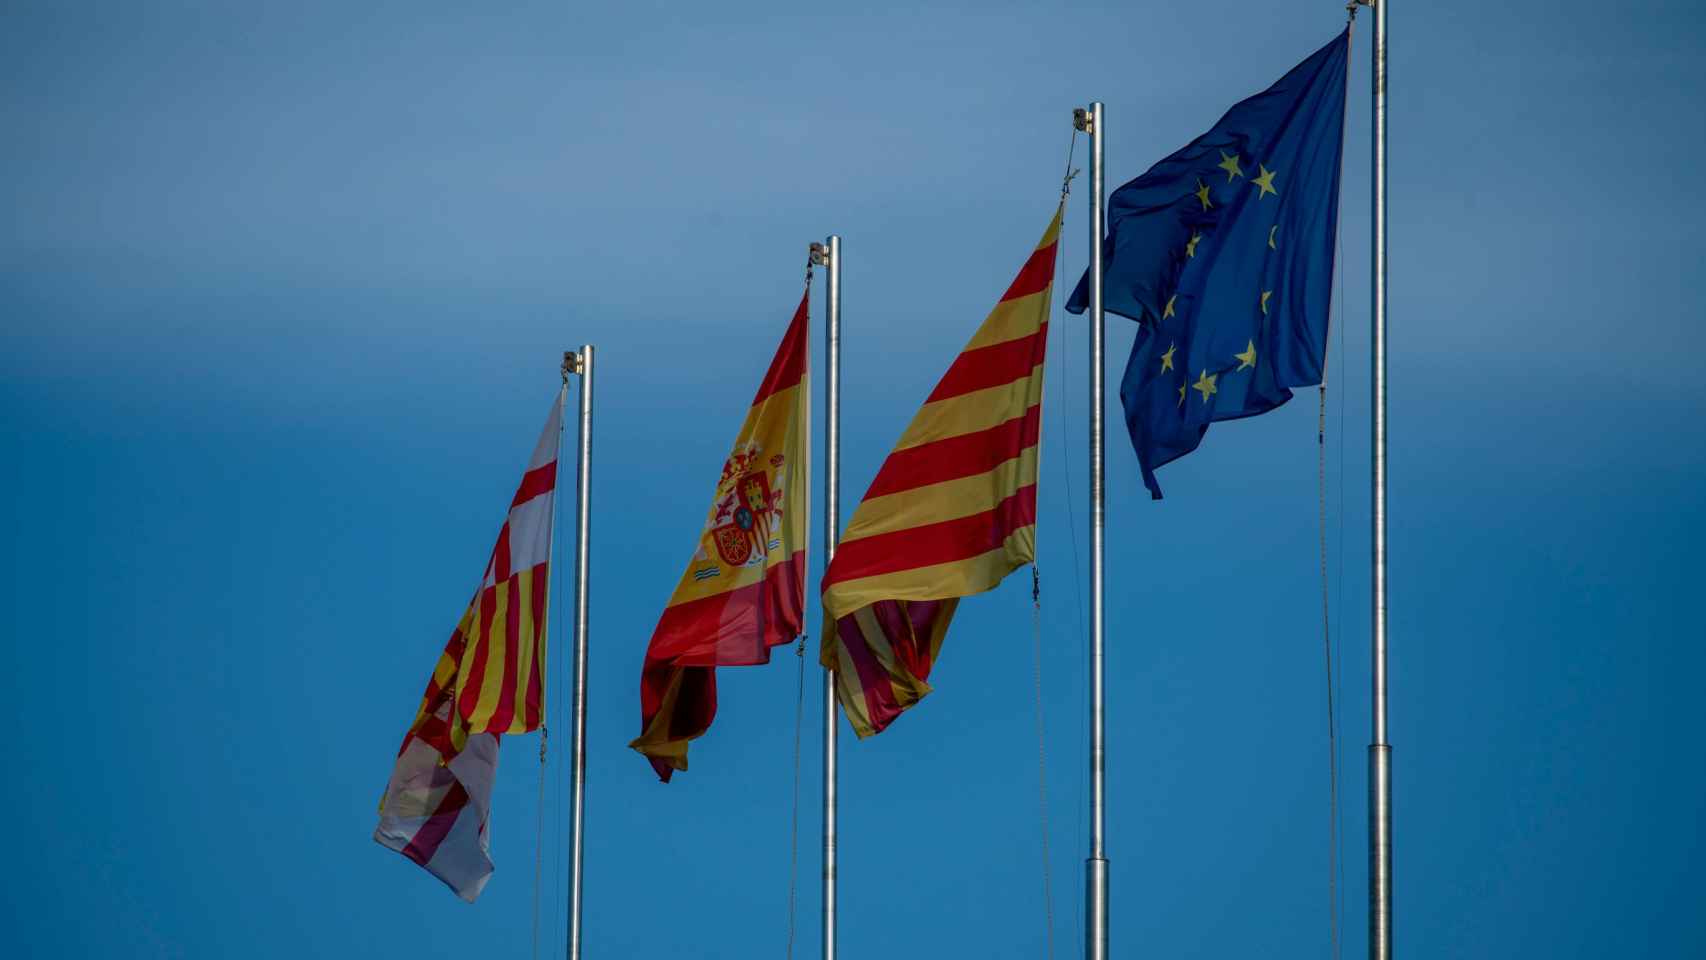 Banderas que podemos encontrar en Barcelona